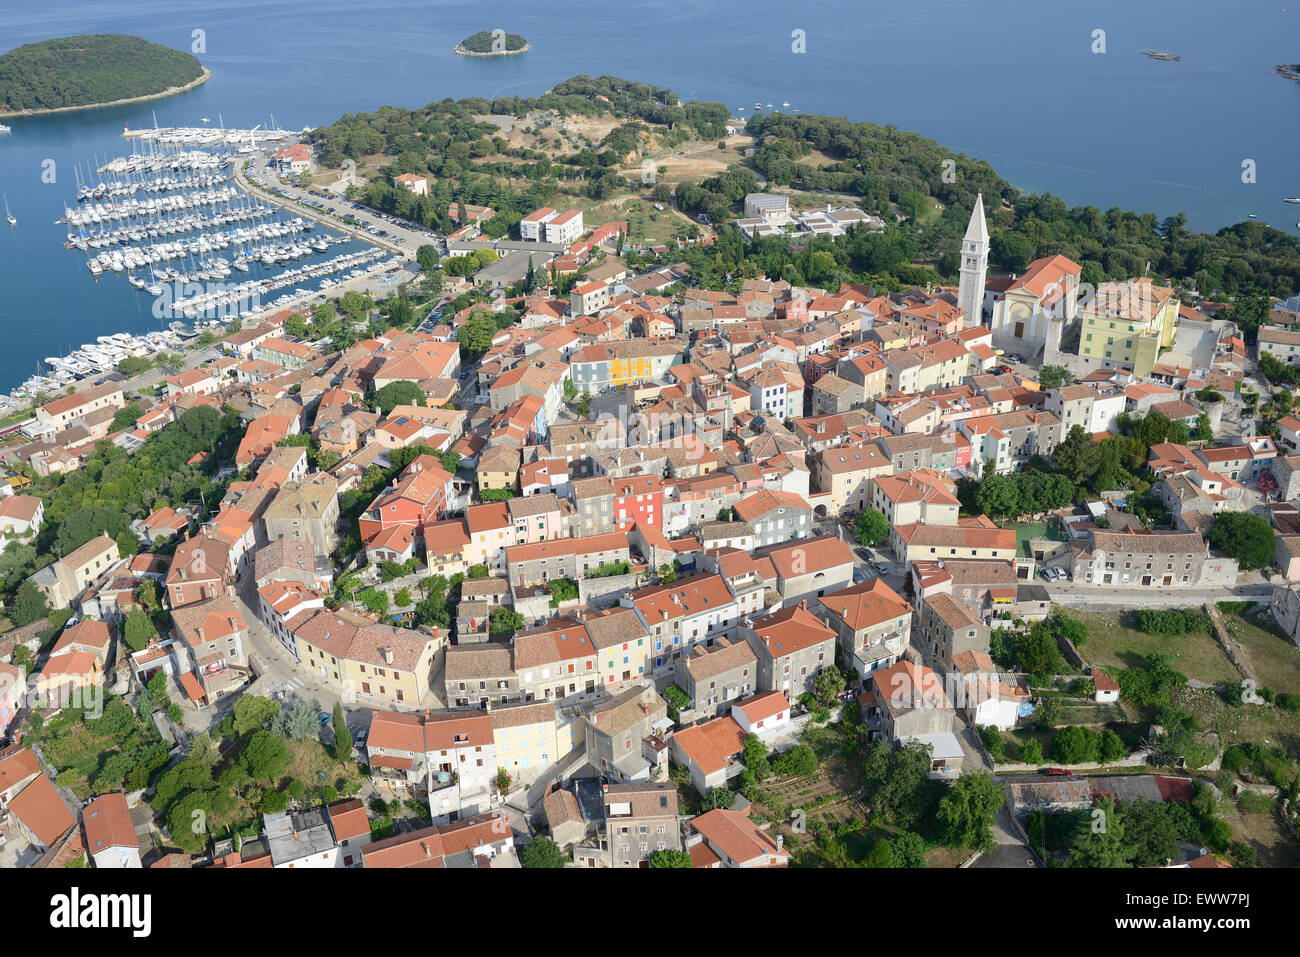 VISTA AEREA. Borgo medievale in cima alla collina che domina la costa adriatica. Vrsar (detto anche Orsera, il suo nome italiano), Istria, Croazia. Foto Stock